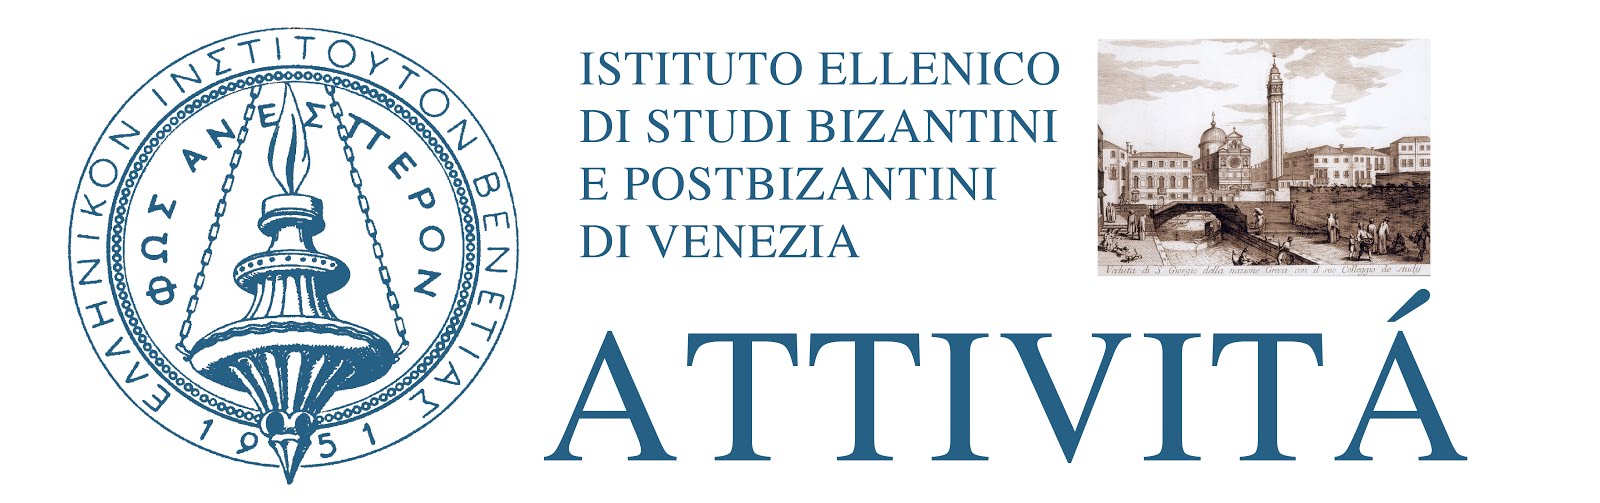 Attività dell'Istituto Ellenico di Studi Bizantini e Postbizantini di Venezia